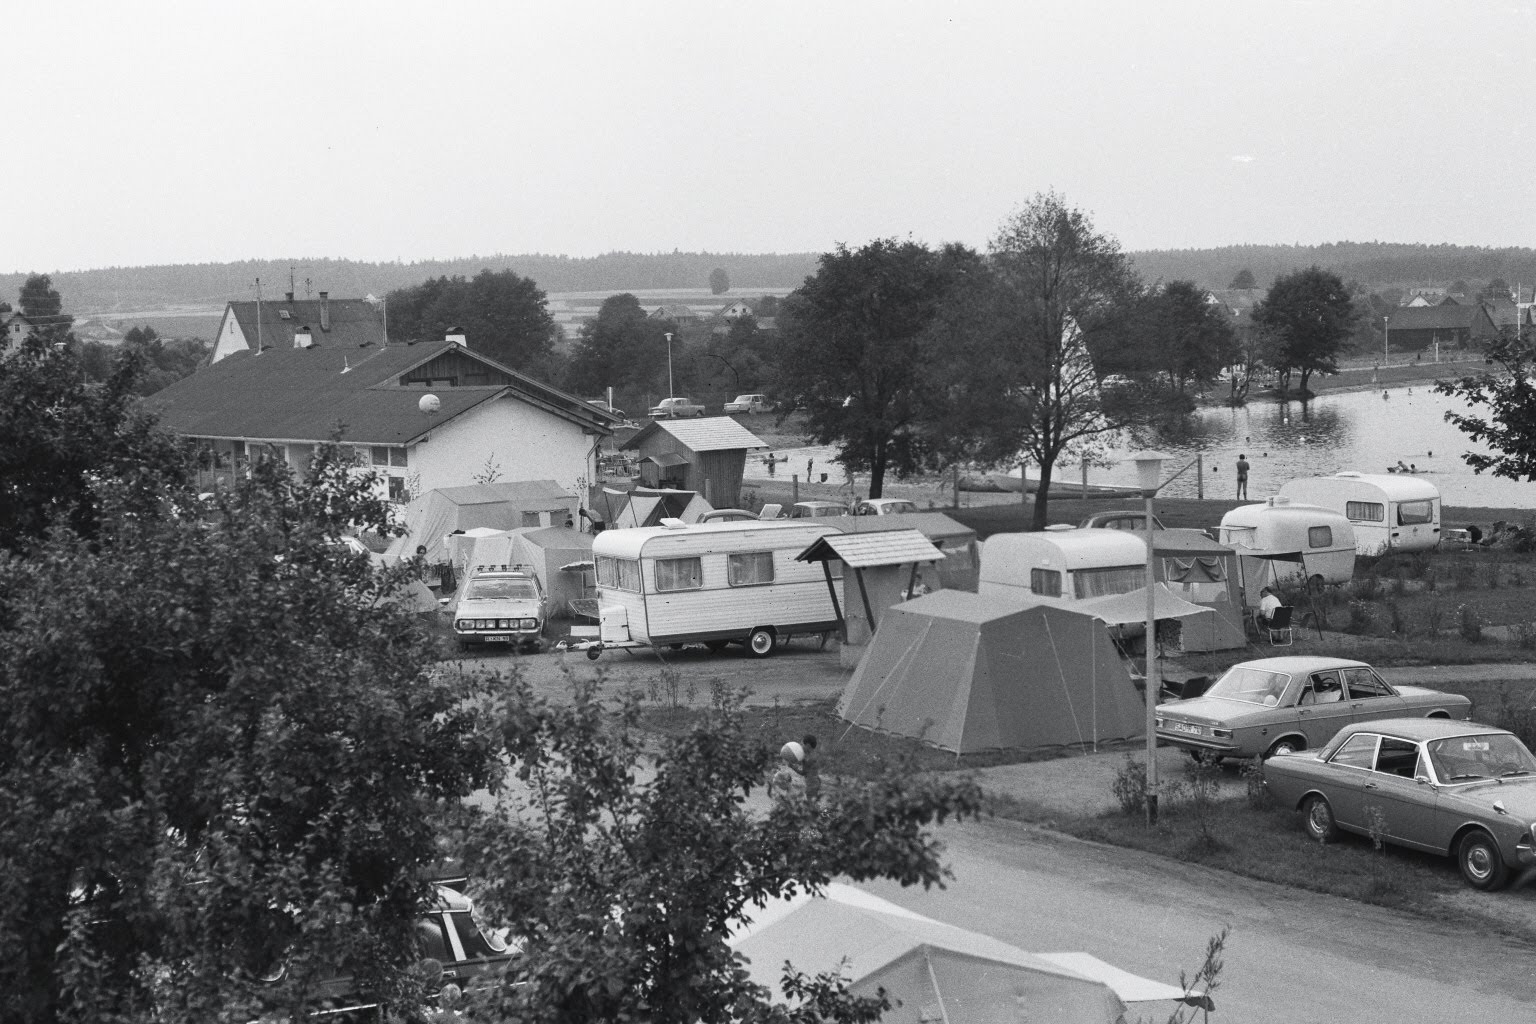 Damals - Neubäuer See Campingplatz früher